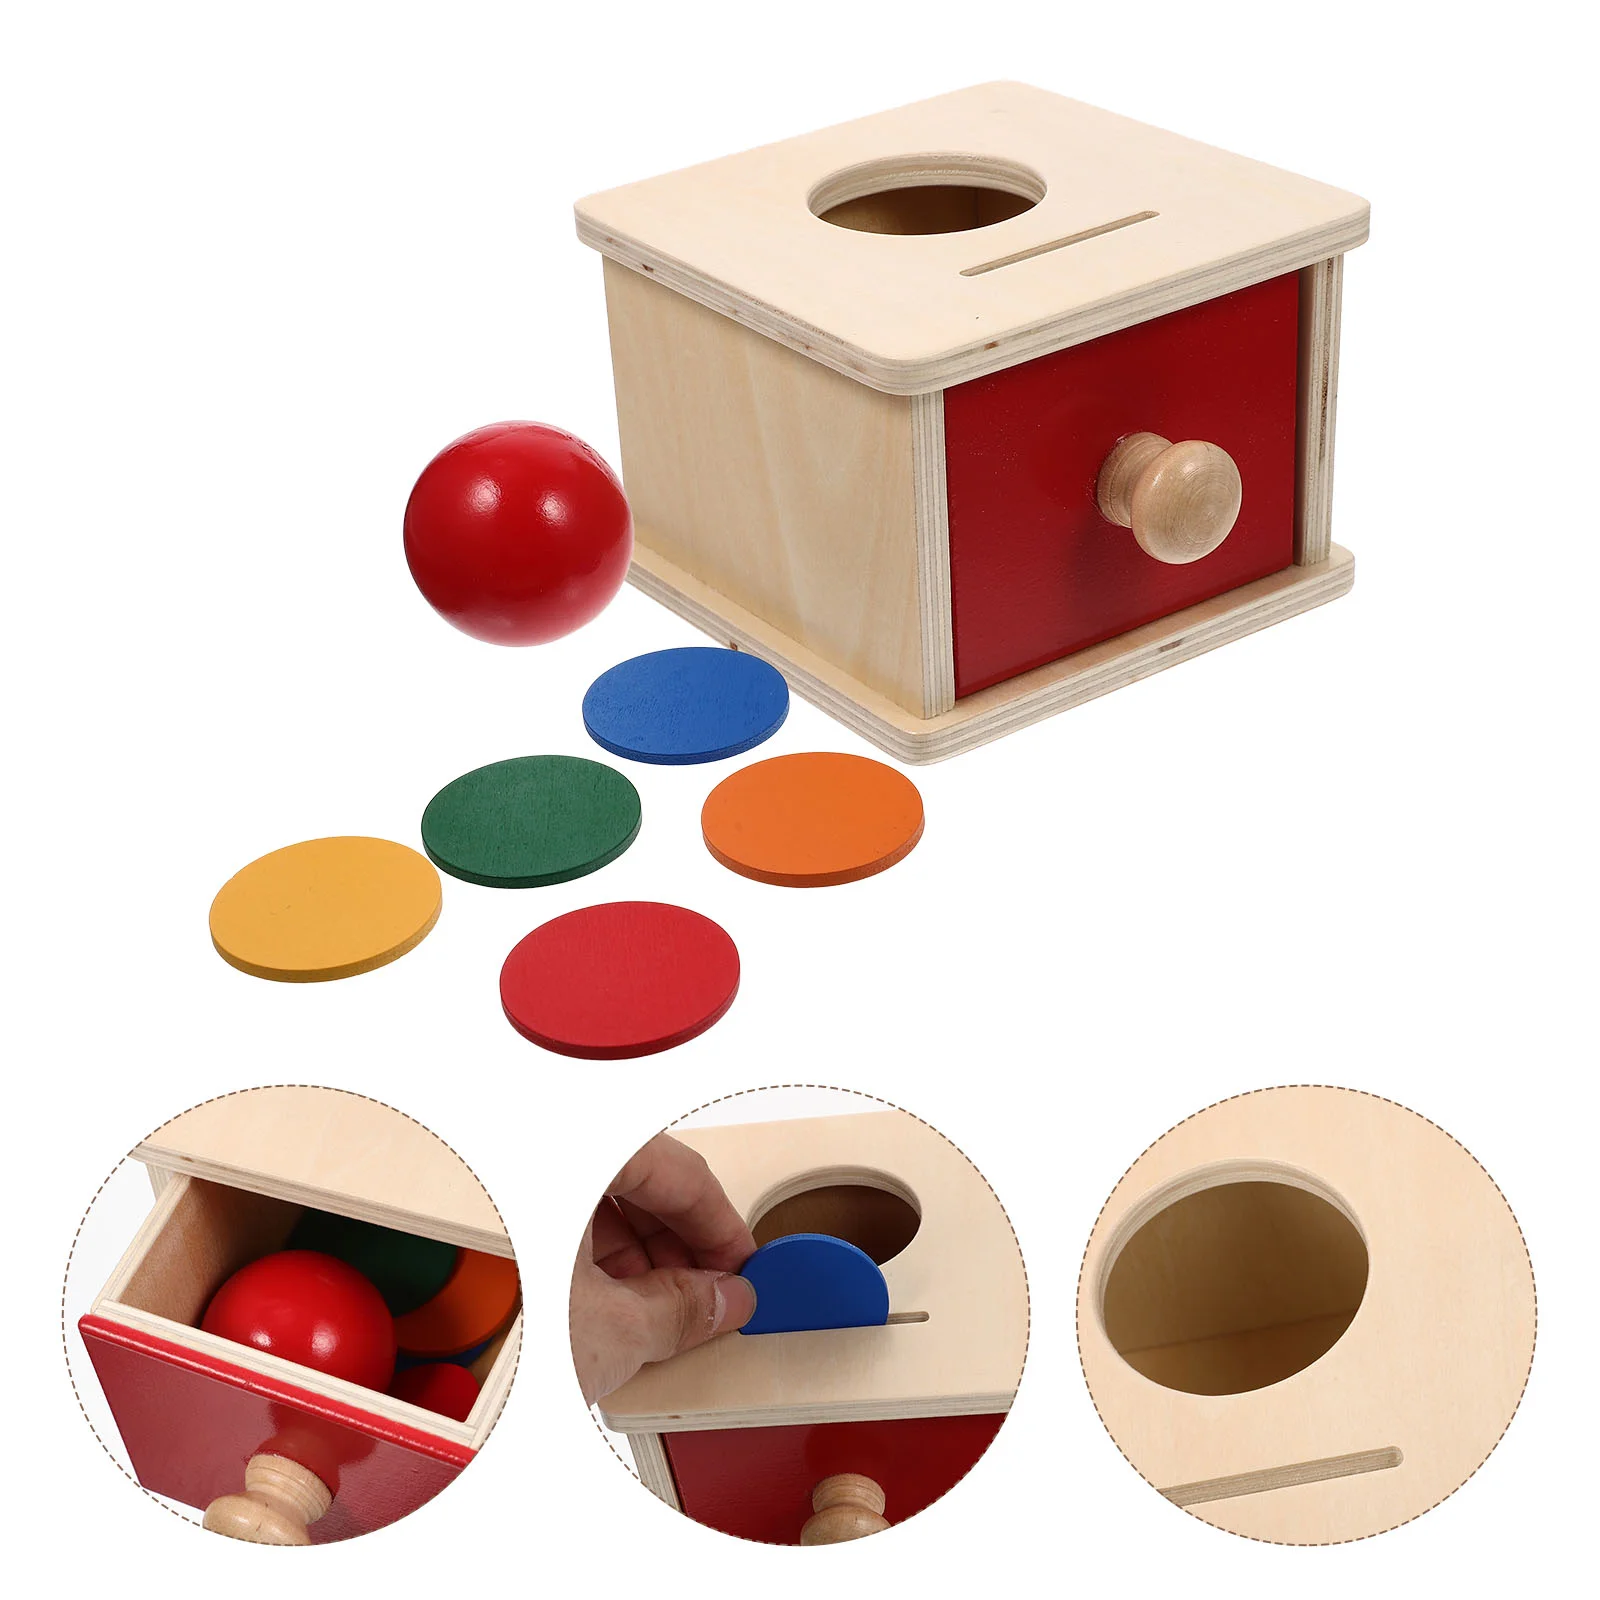 

Деревянный Ящик для игрушек, коробка для монет, интеллектуальная игрушка для детей, коробка для монет, развивающая игрушка, 1 комплект